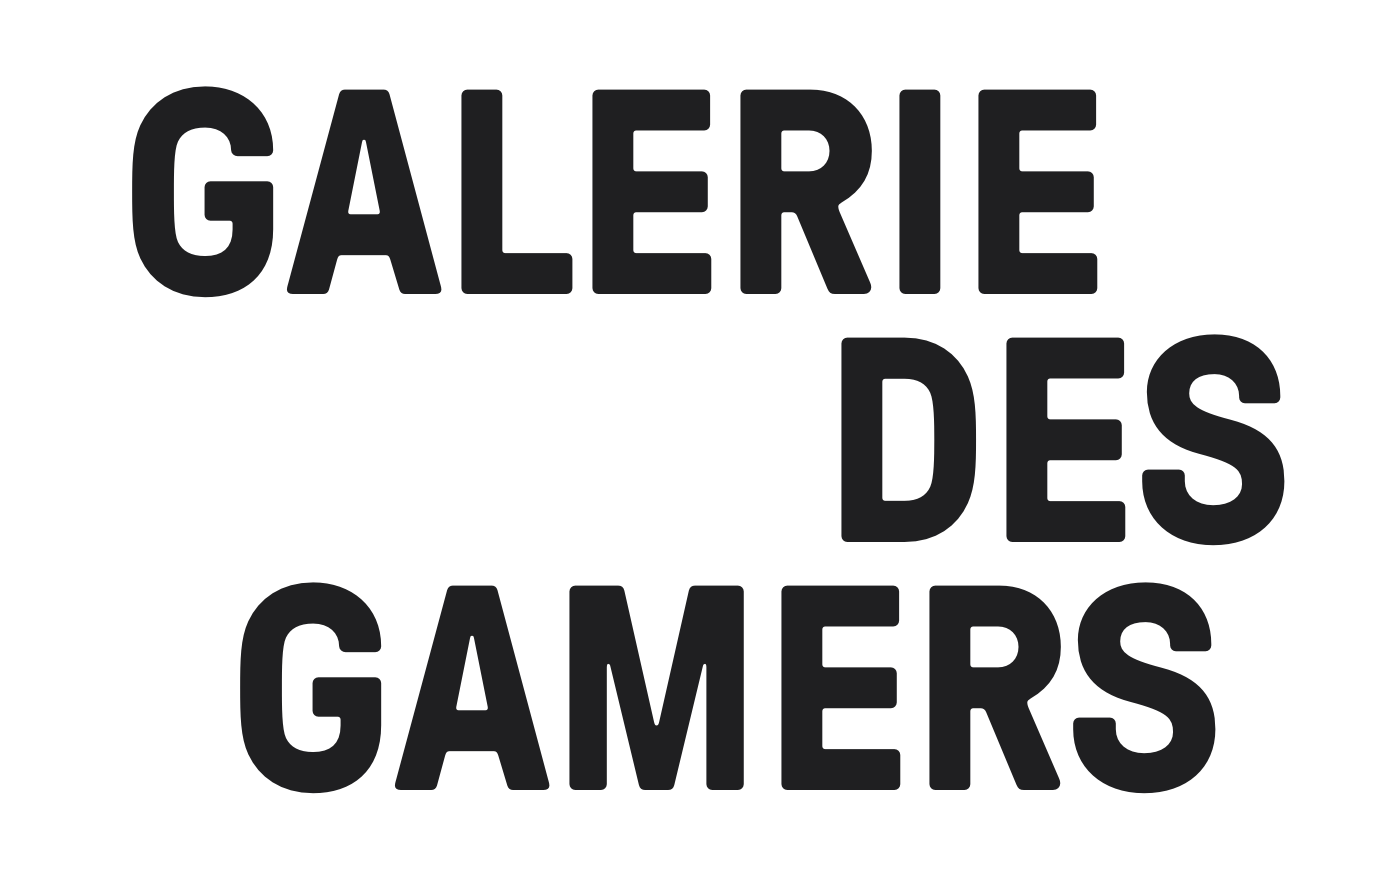 GALERIE DES GAMERS